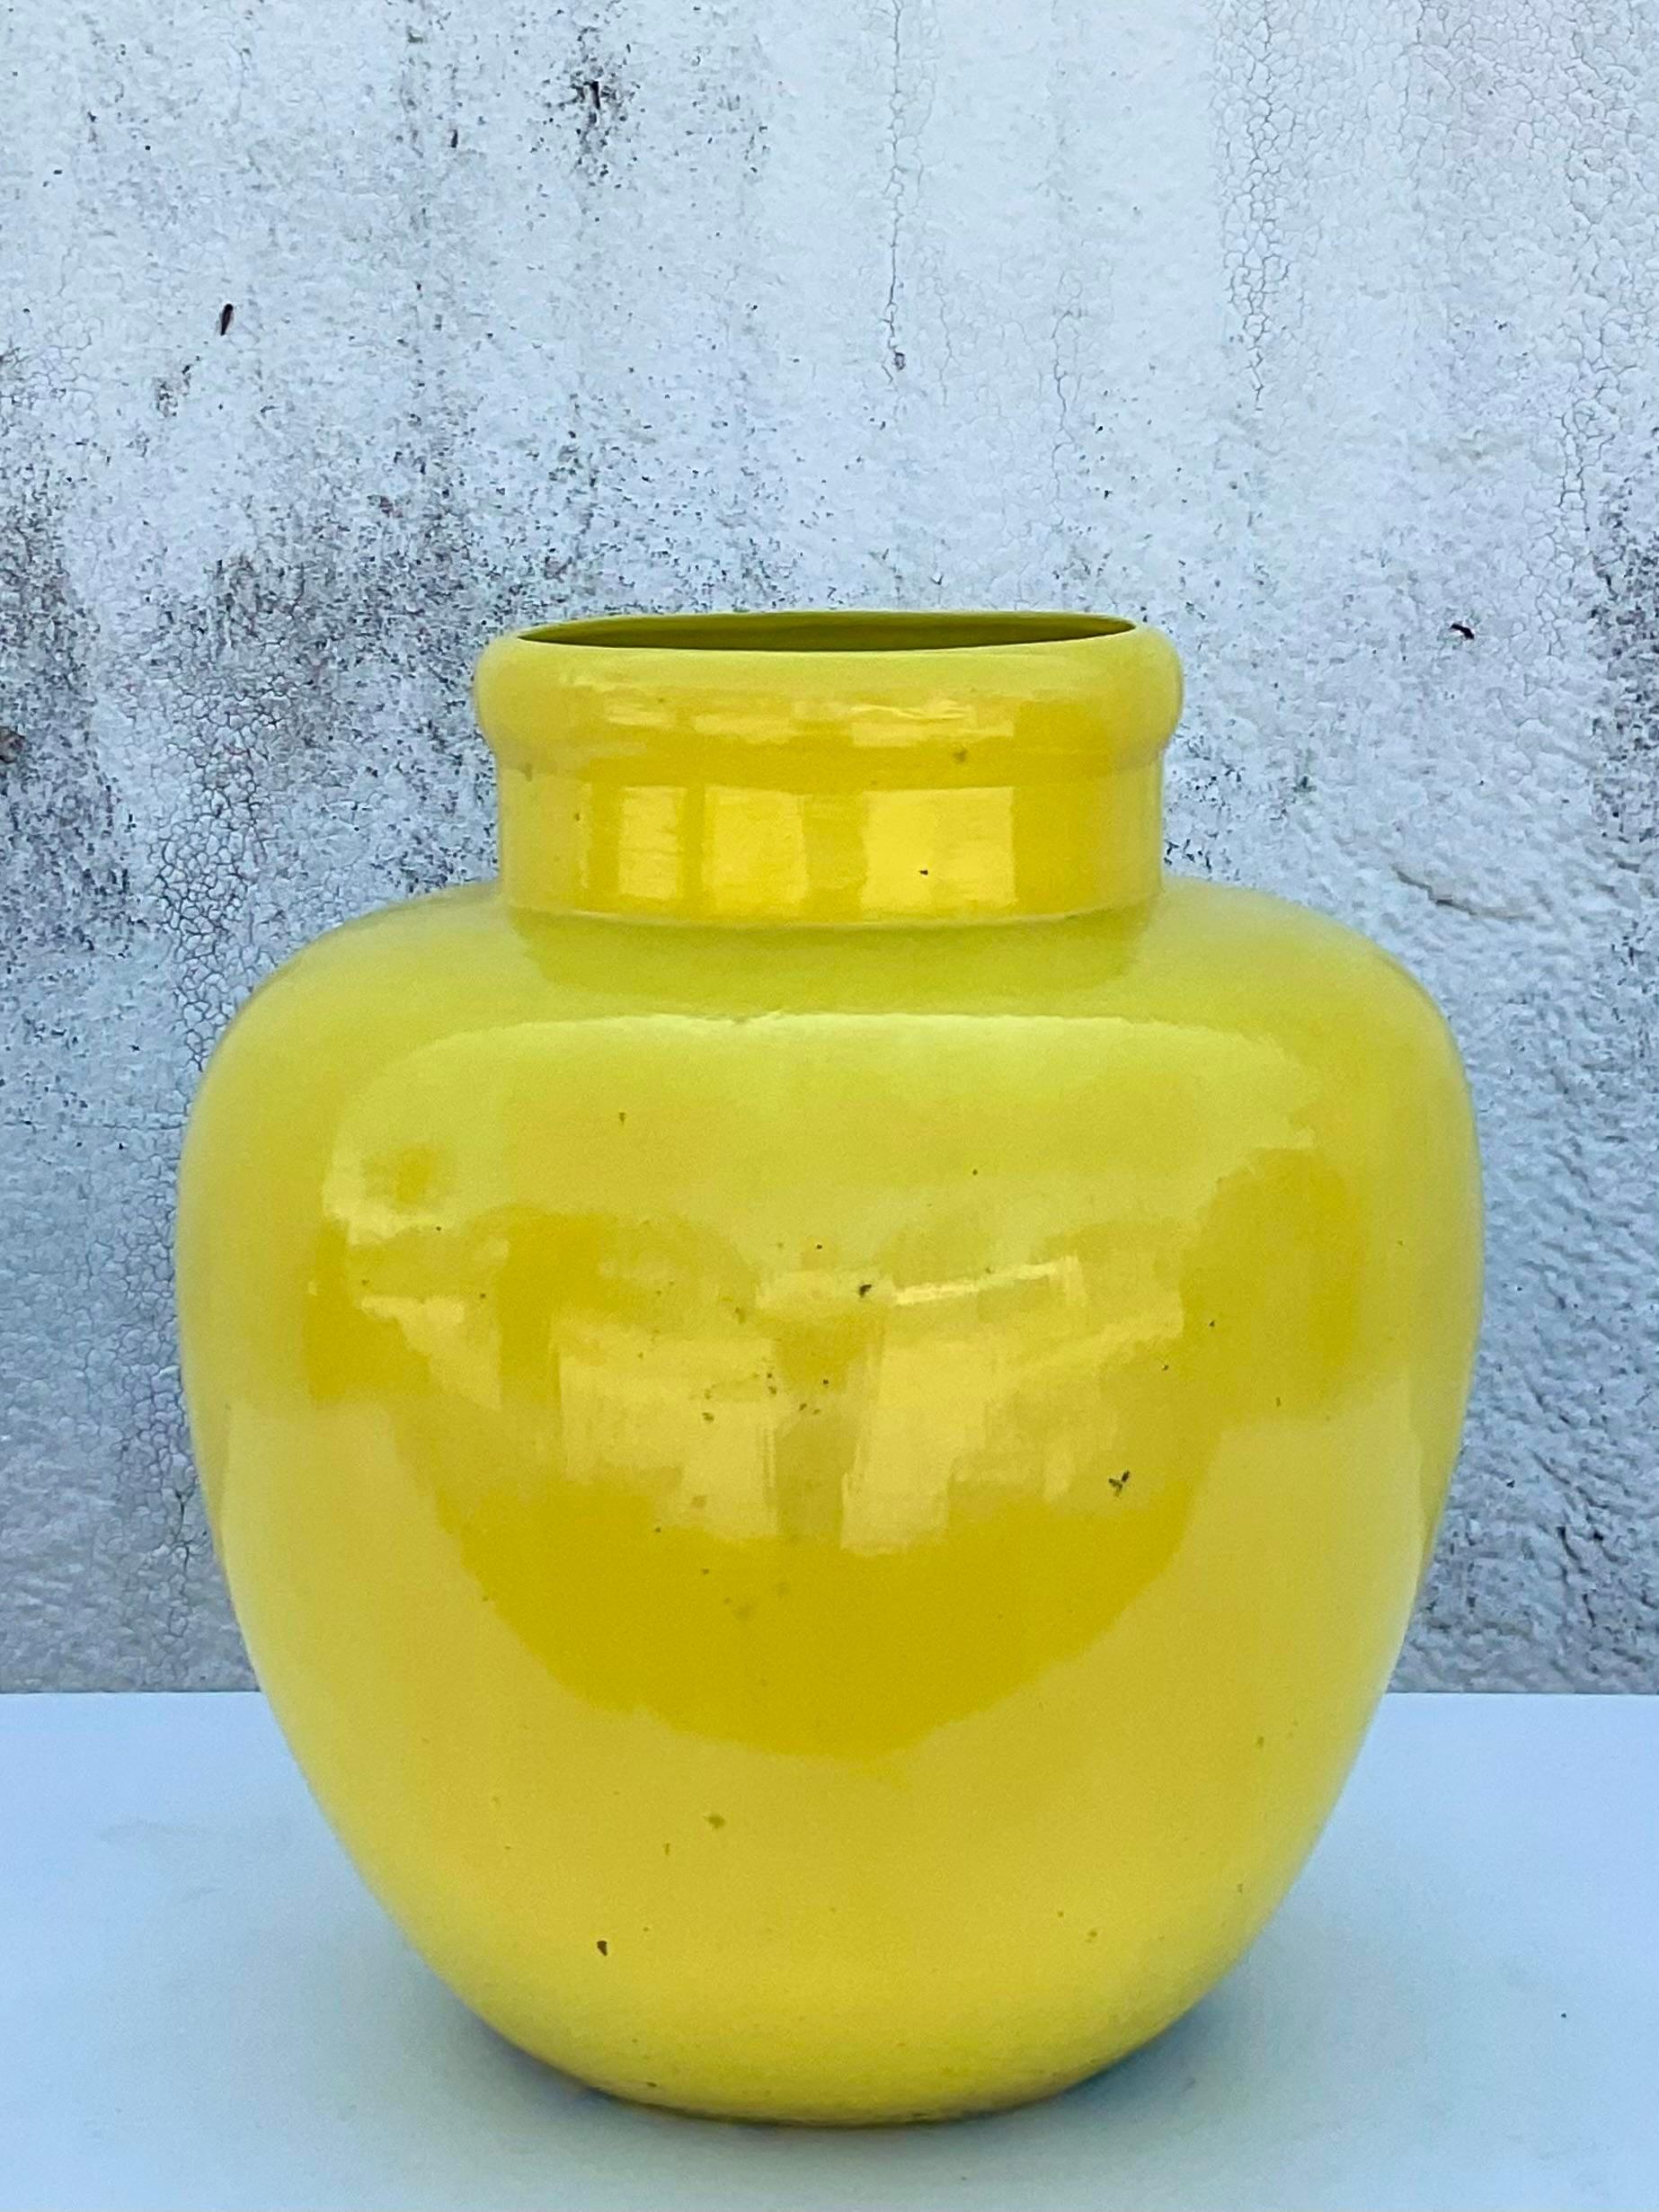 Fantastische glasierte Vintage-Keramik-Urne. Schönes leuchtendes Gelb in glänzender Ausführung. Gebohrt für Entwässerung. Bringen Sie ein wenig Farbe in jeden Raum. Teil einer Urnensammlung, die auch auf meiner Chairish-Seite erhältlich ist.